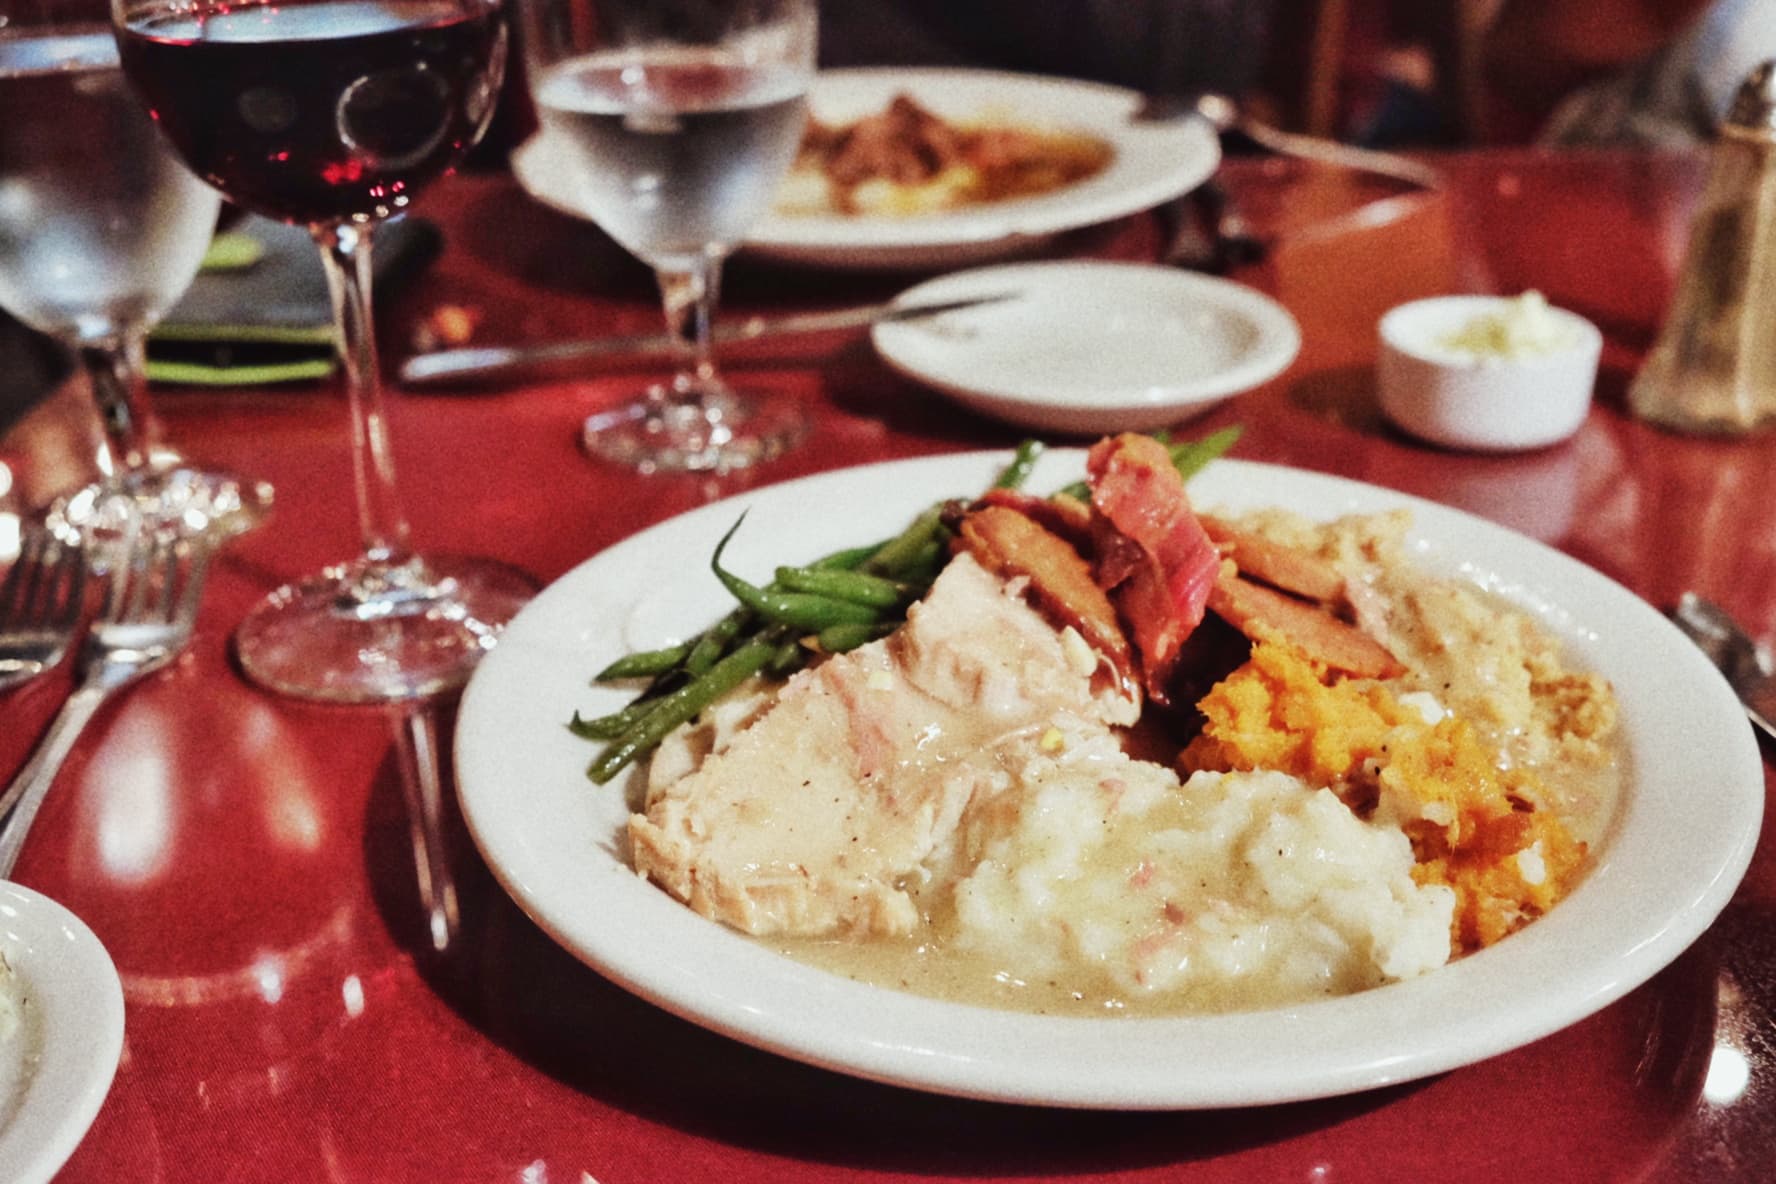 "Thanksgiving Dinner" Fort Davis, 2016